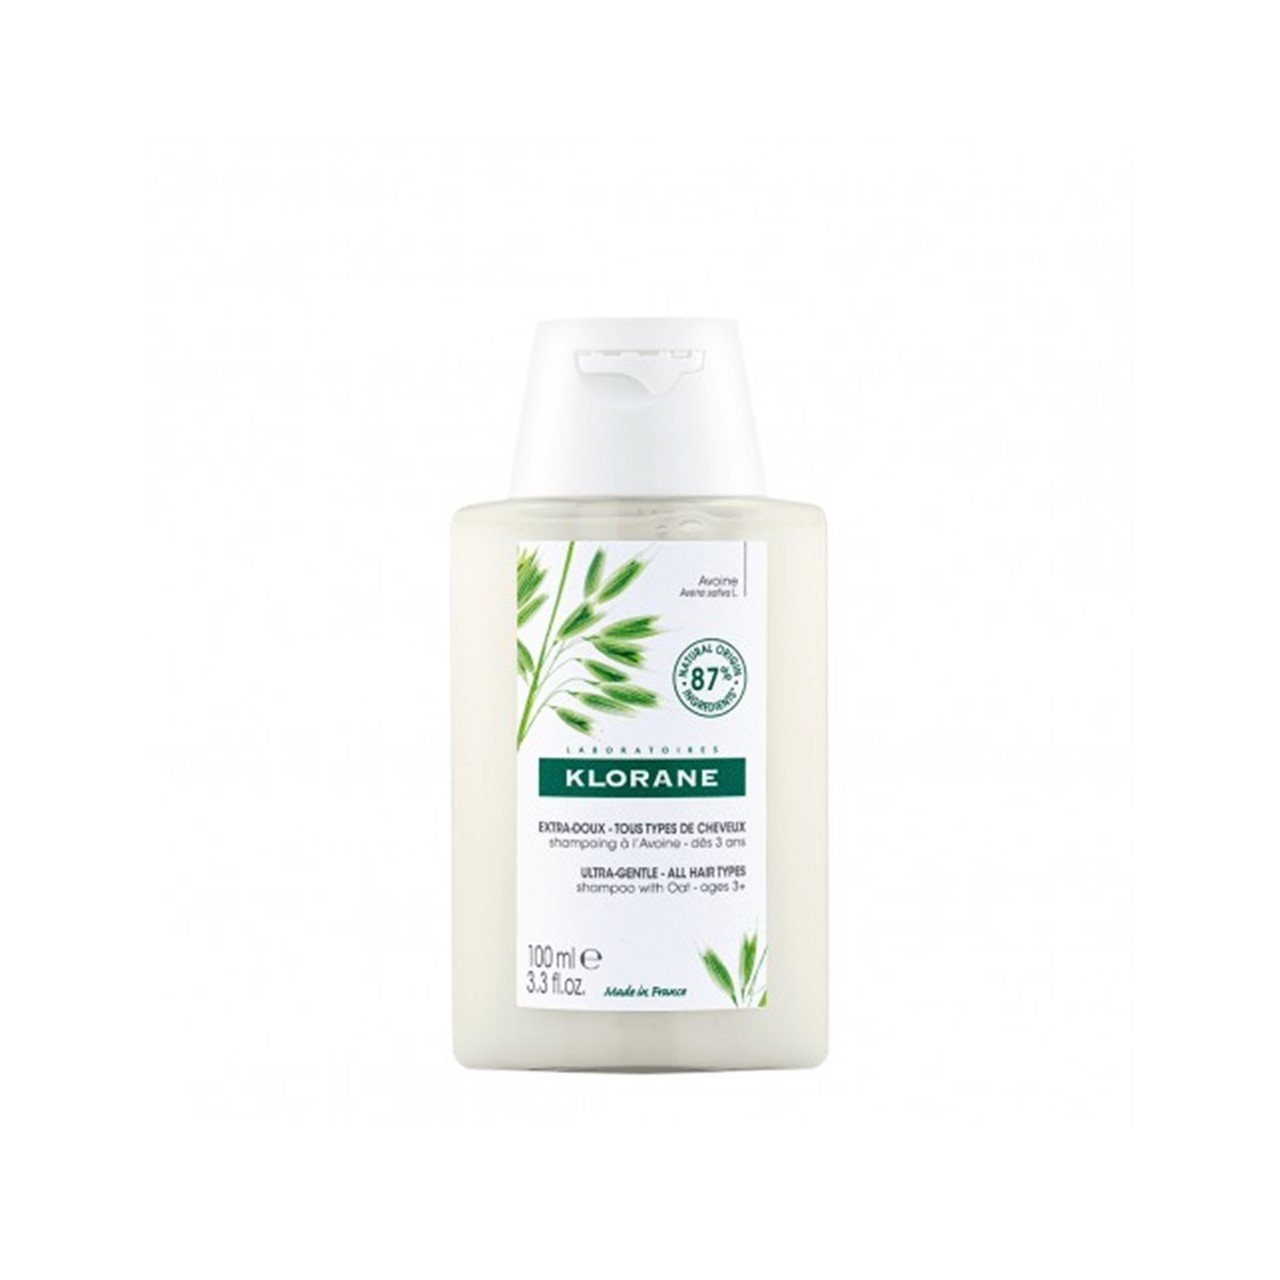 Klorane Ultra-Gentle Shampoo with Oat Milk 100ml